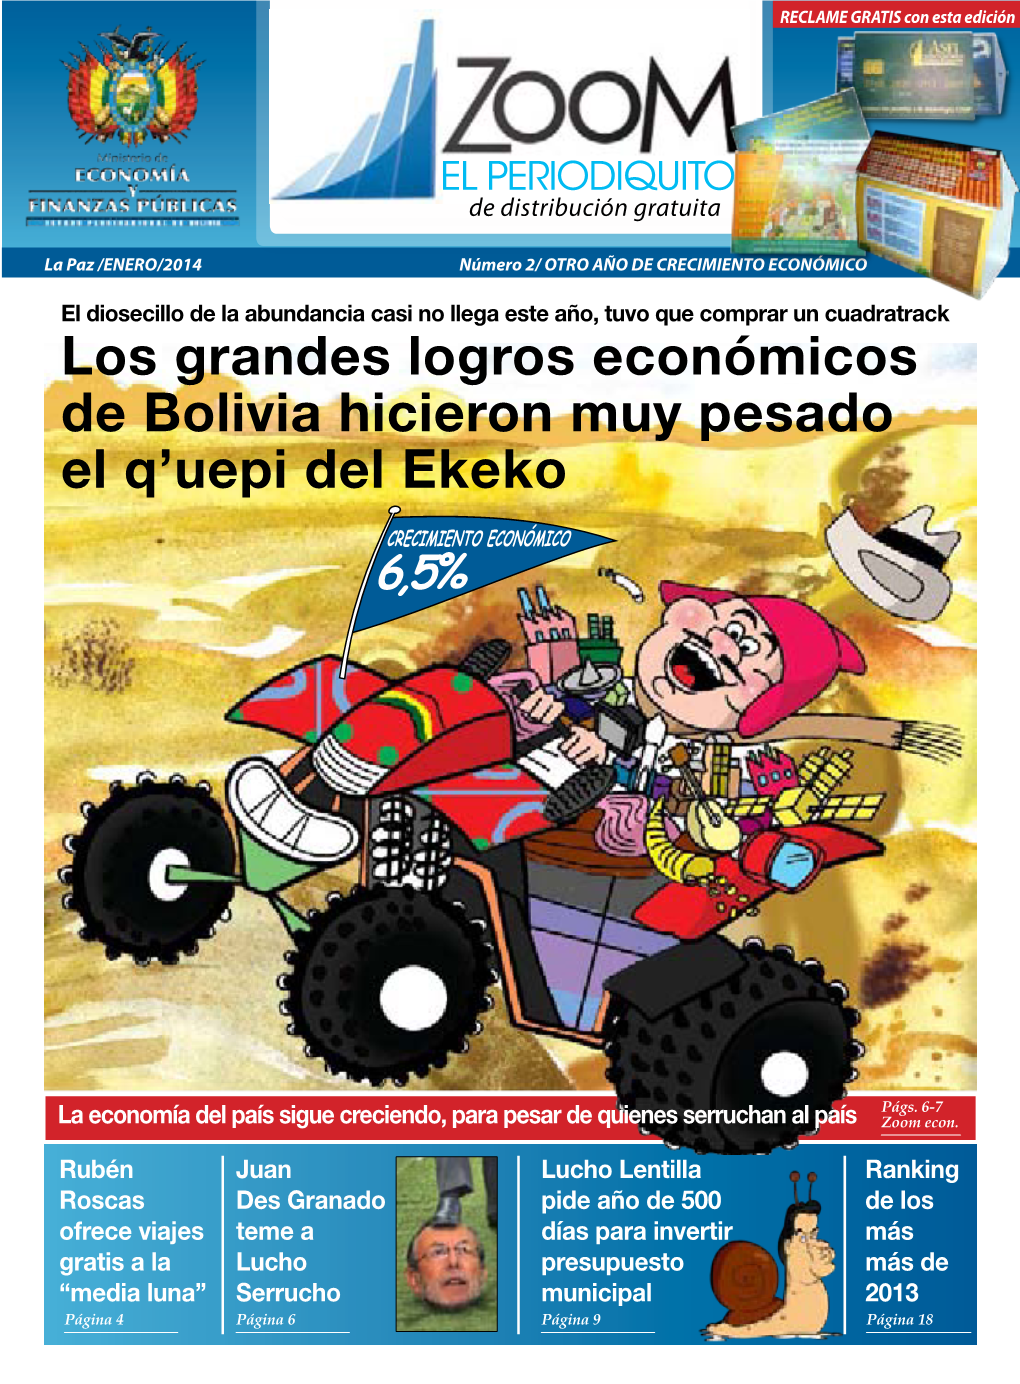 Los Grandes Logros Económicos De Bolivia Hicieron Muy Pesado El Q’Uepi Del Ekeko